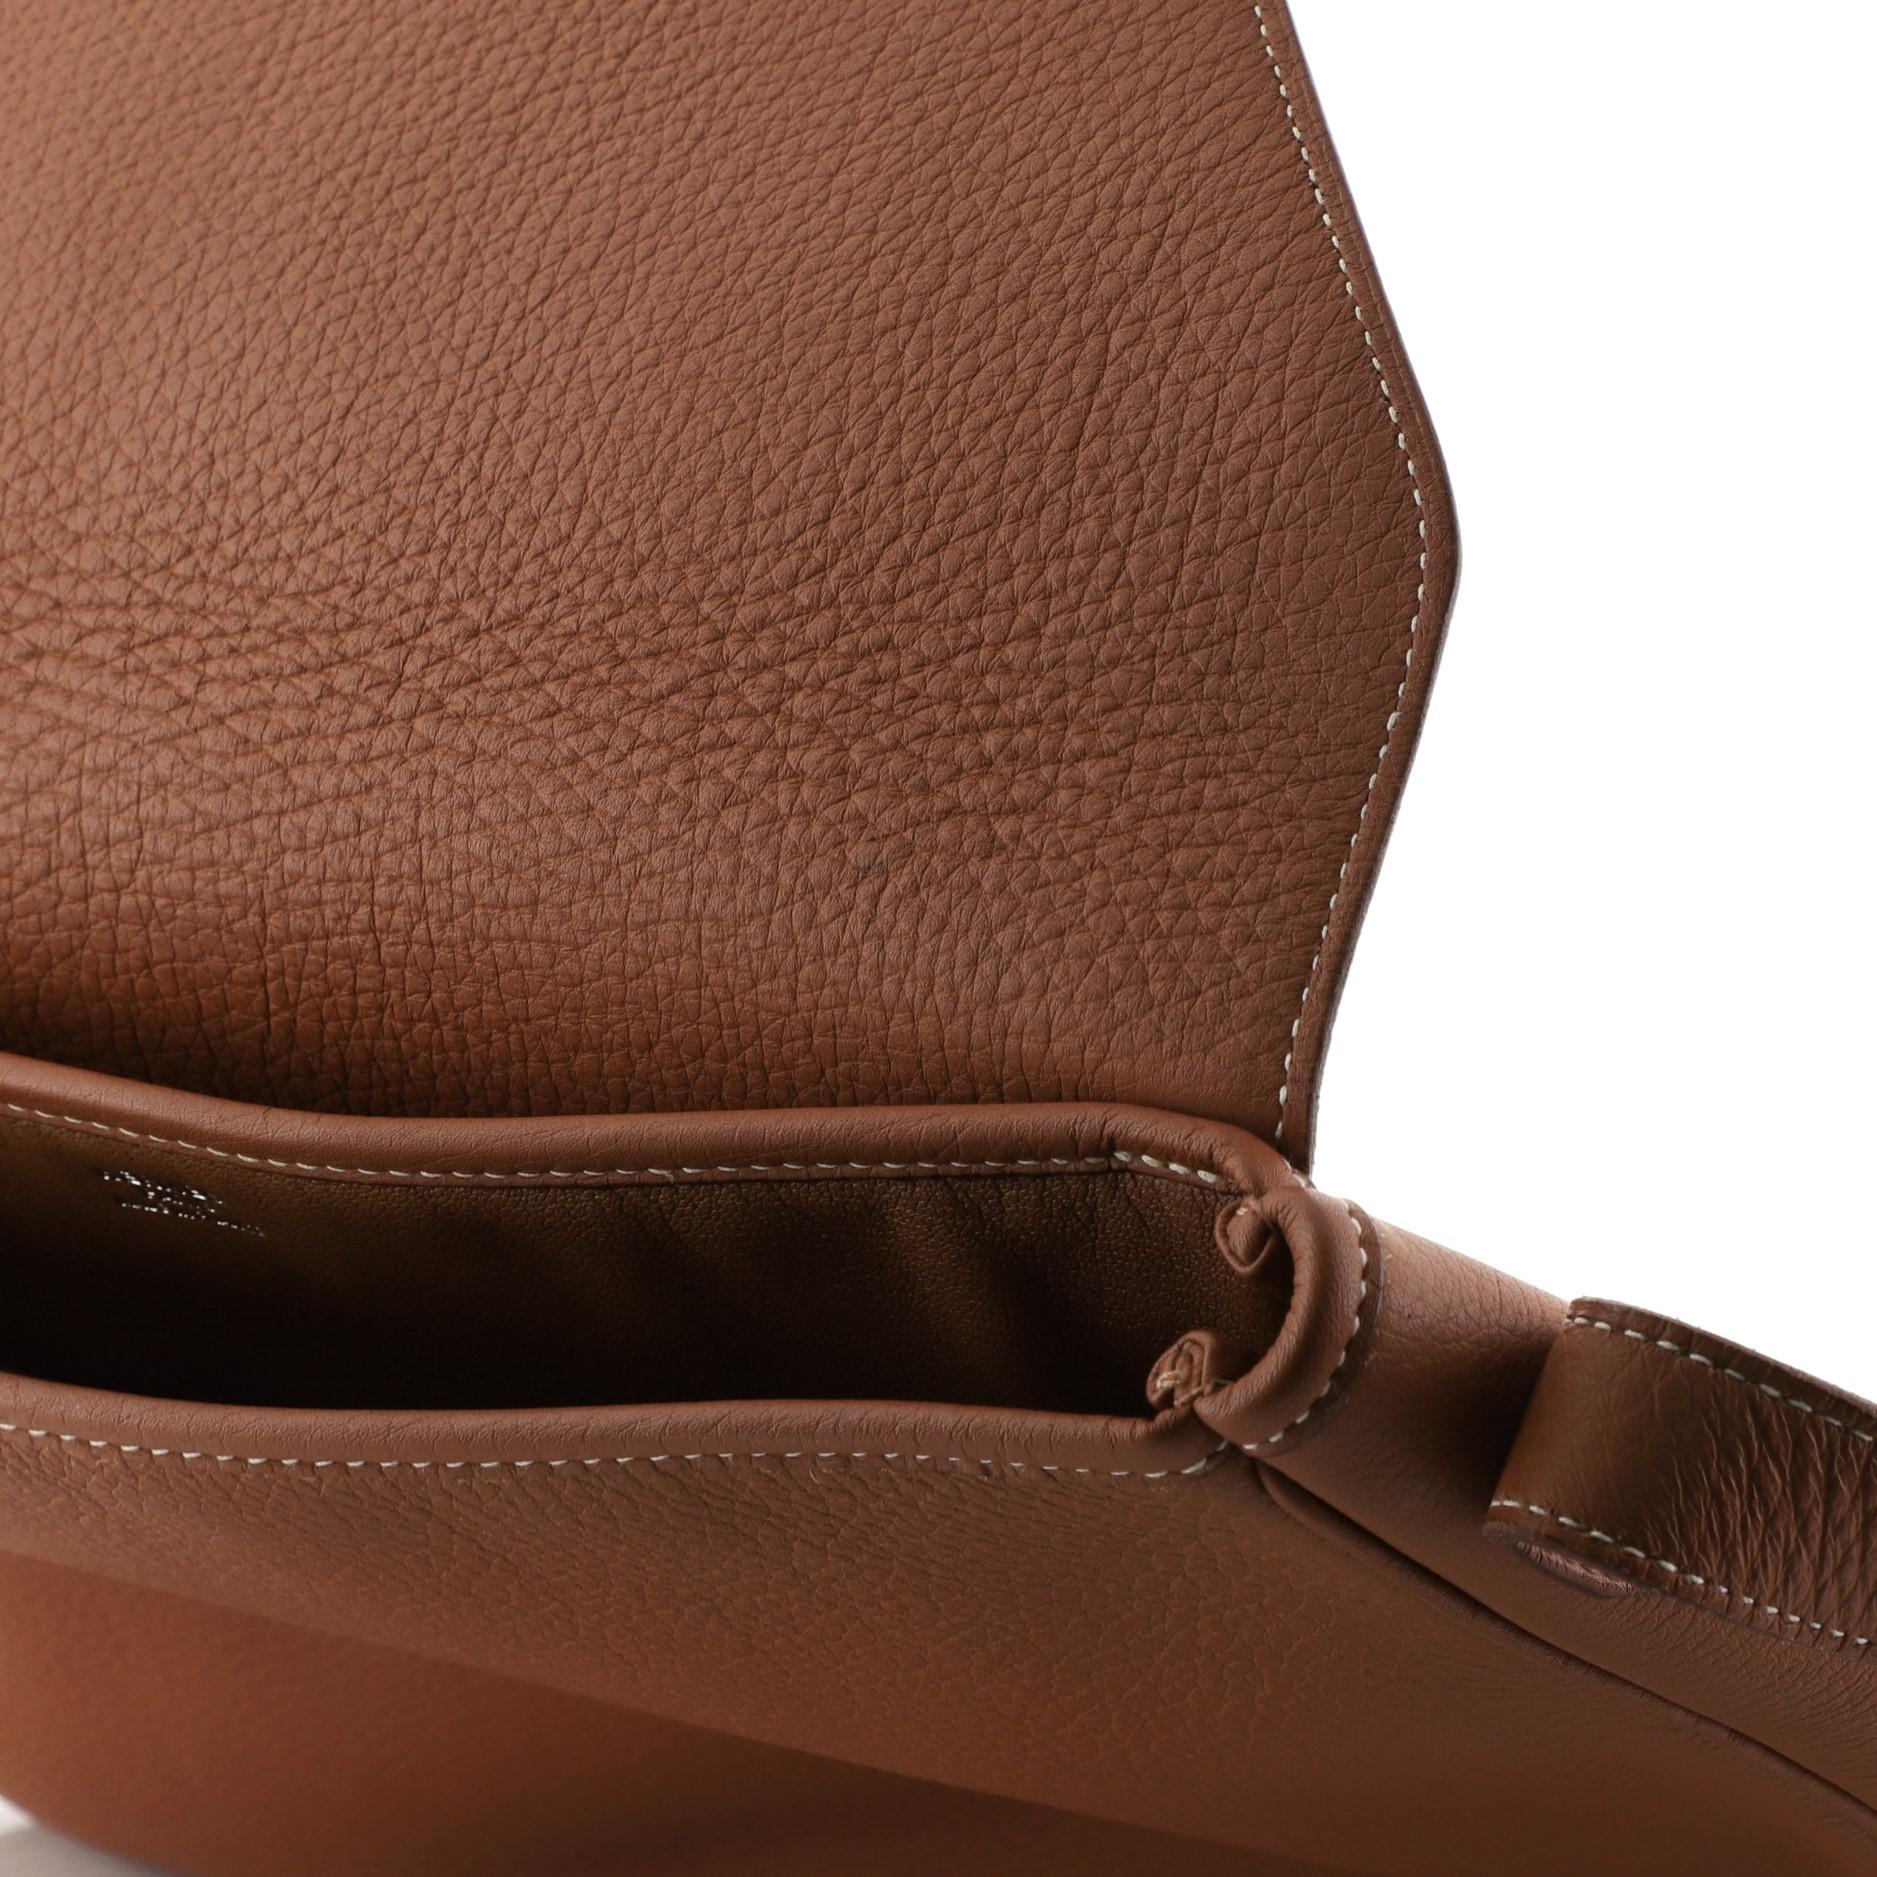 Women's Hermes Christine Handbag Leather